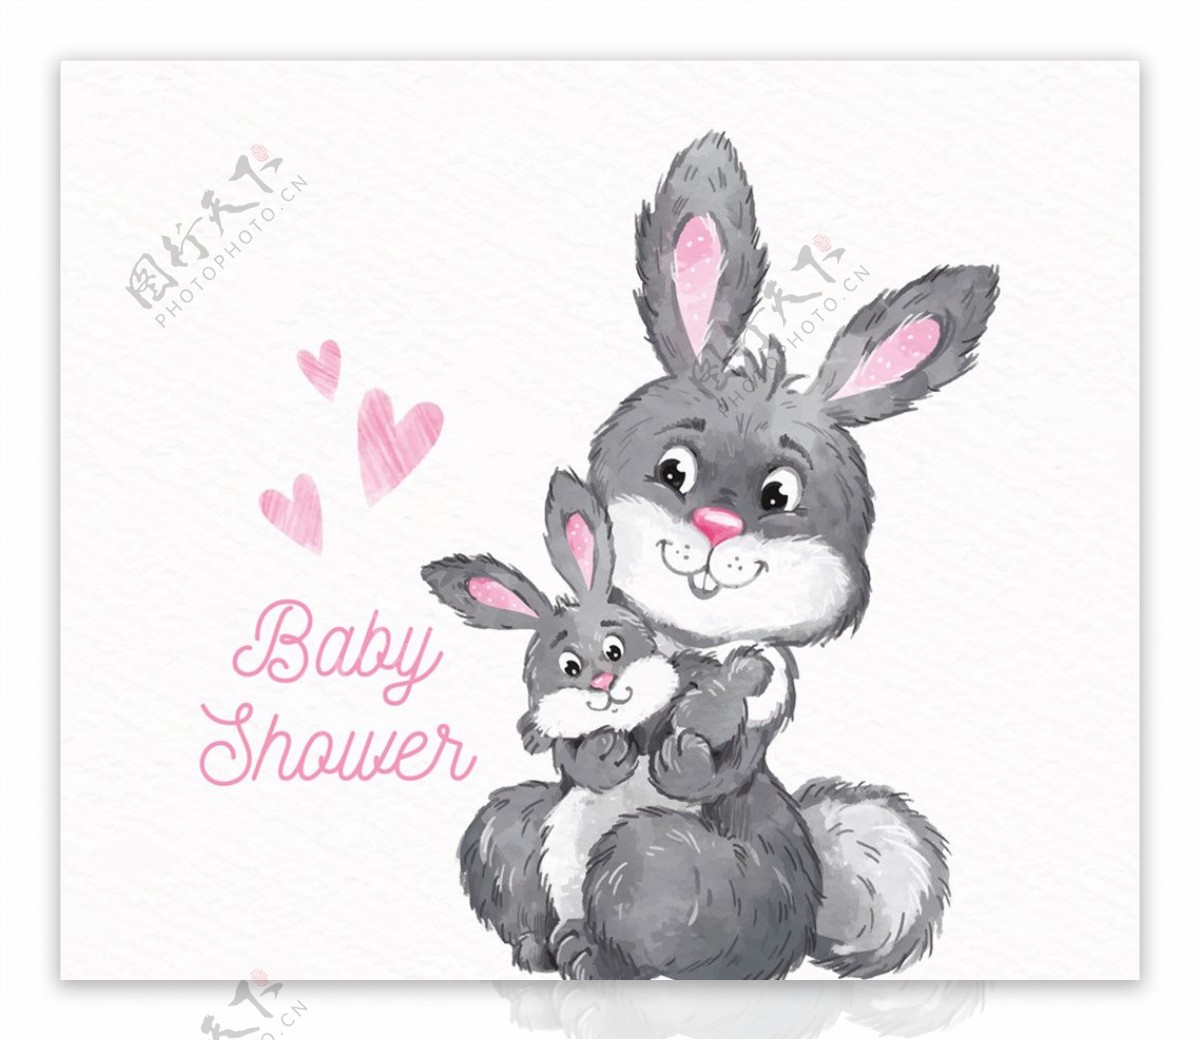 彩绘兔子迎婴派对海报矢量素材